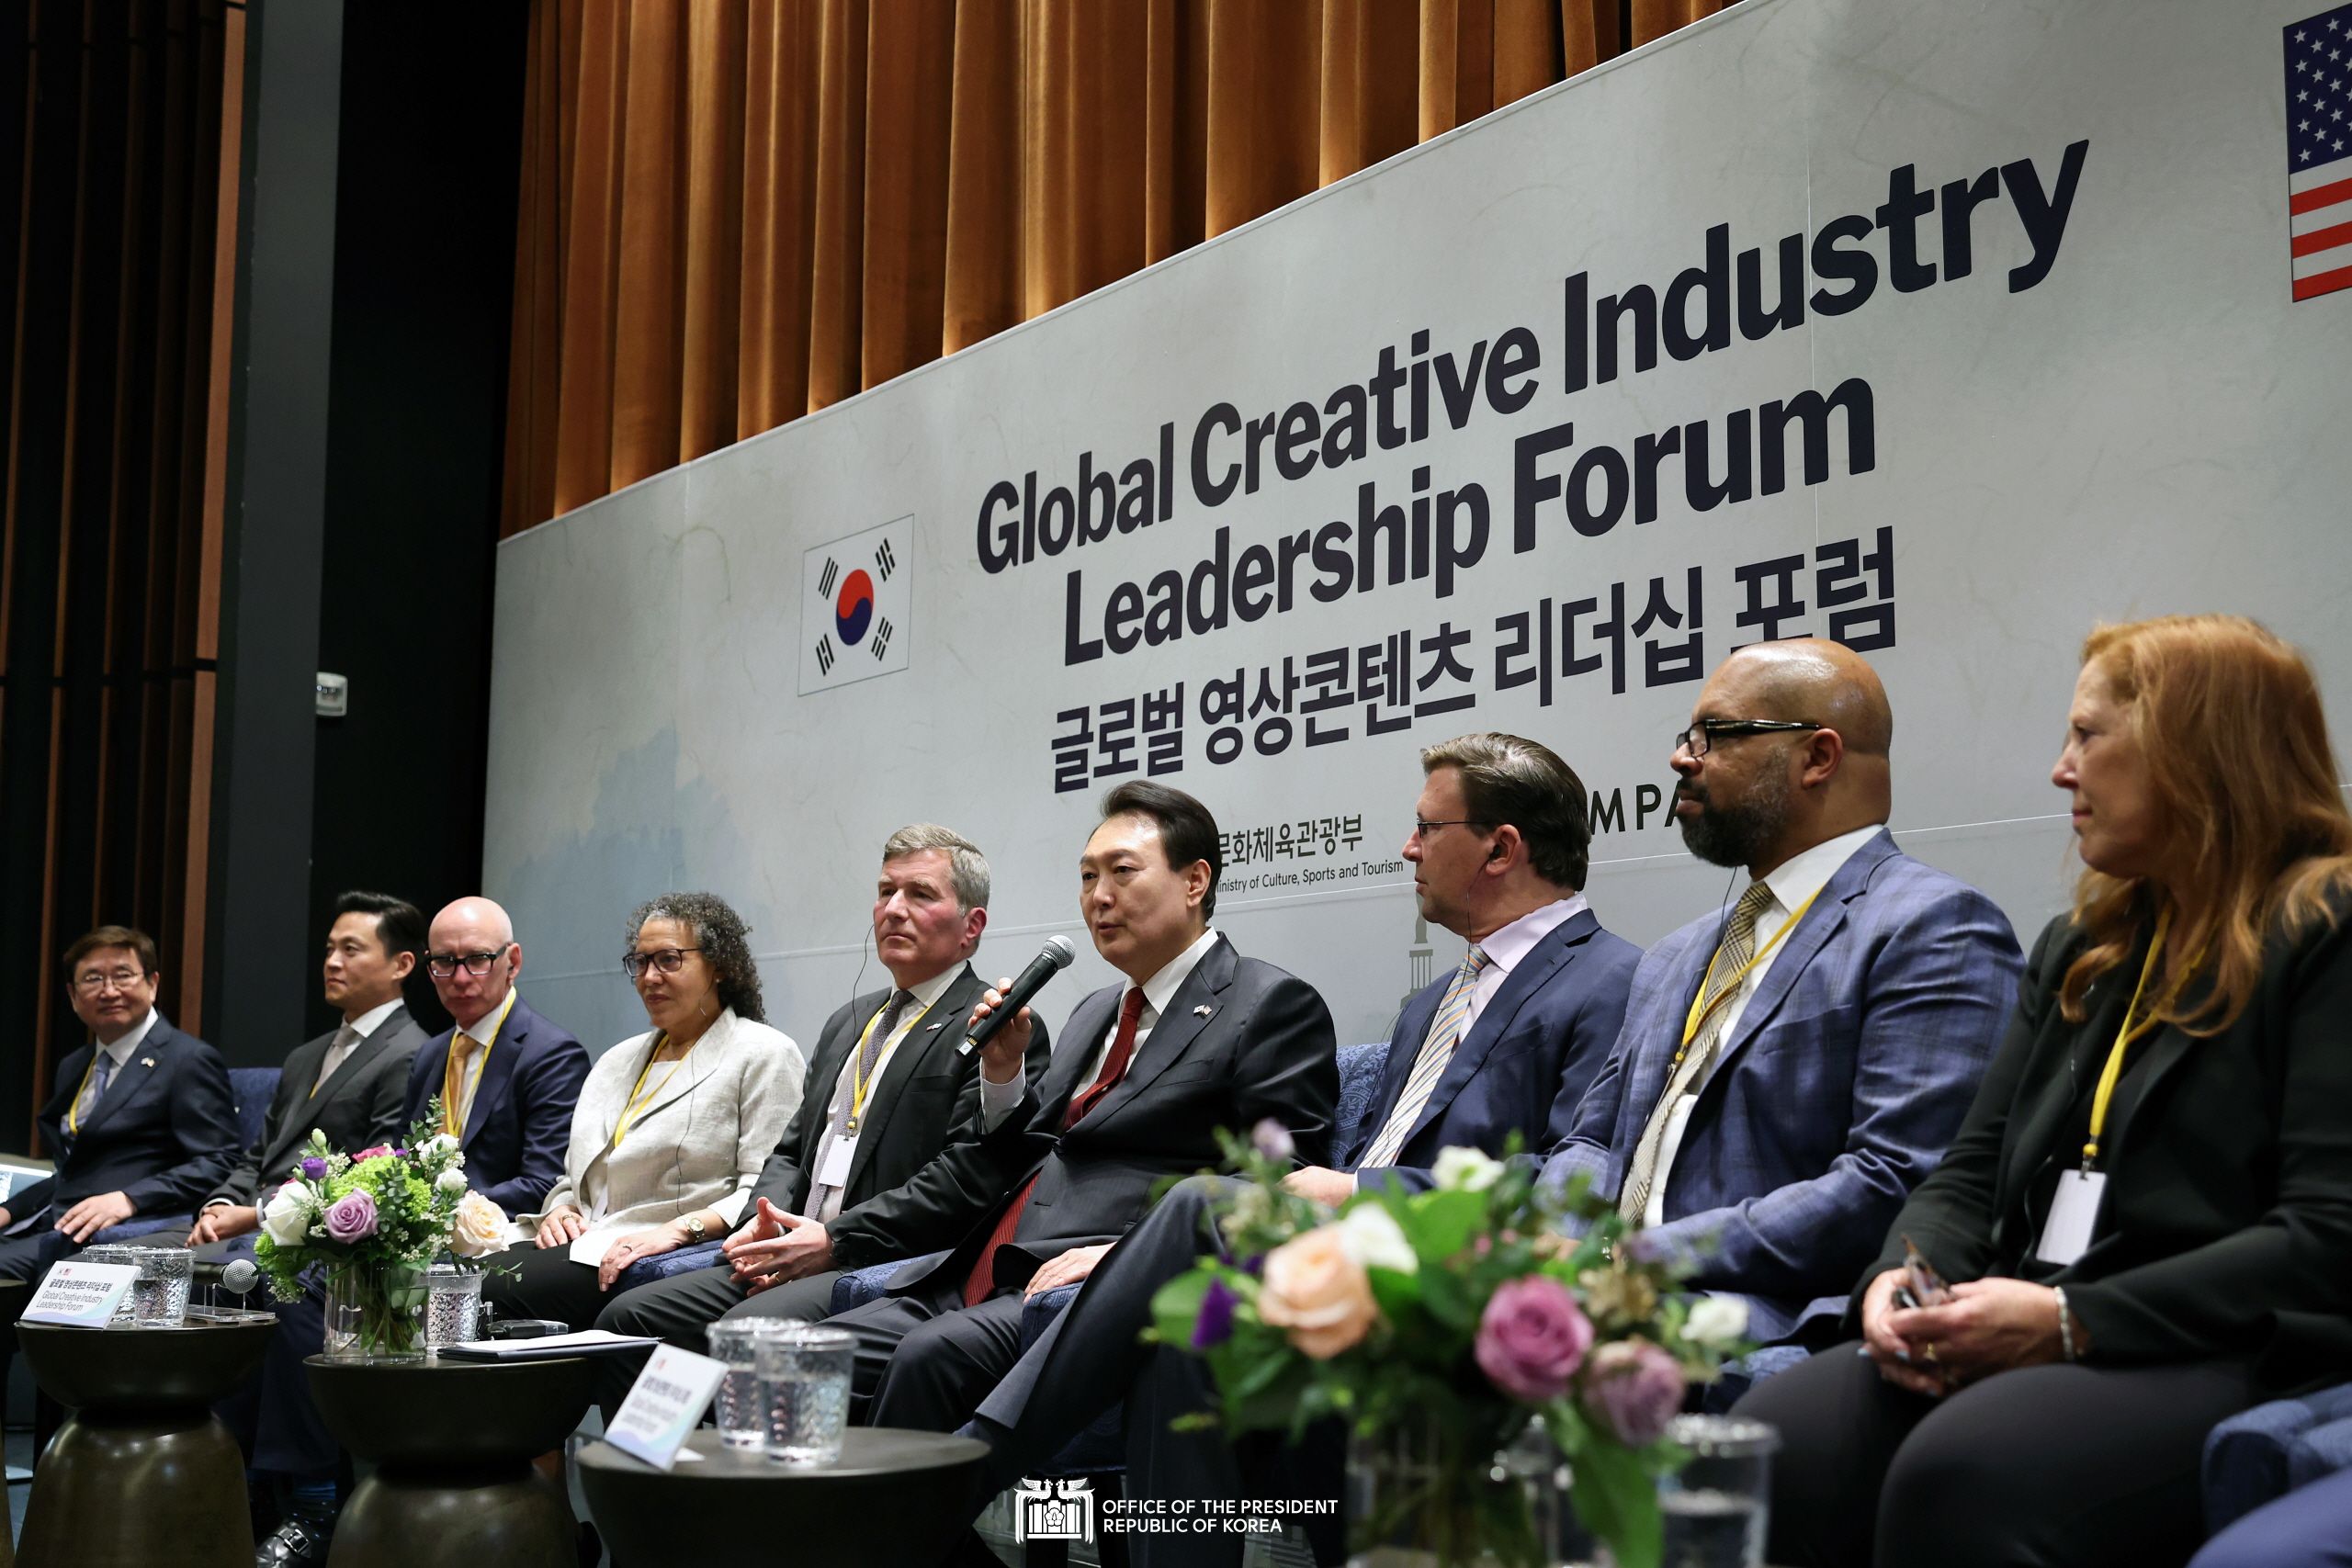 Attending the Global Creative Industry Leadership Forum slide 1